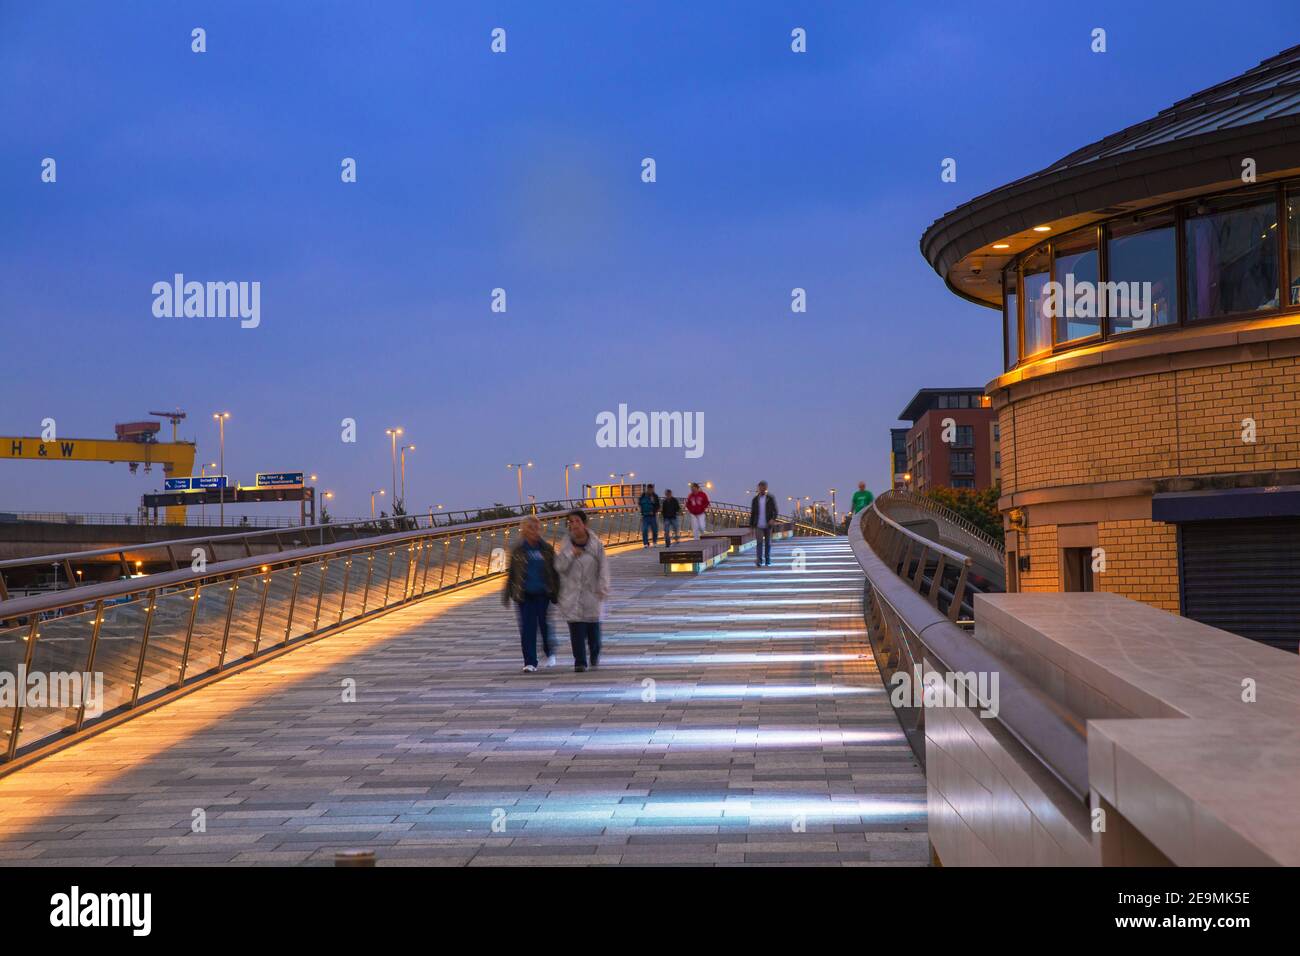 Vereinigtes Königreich, Nordirland, Belfast, Lagan Weir Fußgängerzone und Radbrücke Stockfoto